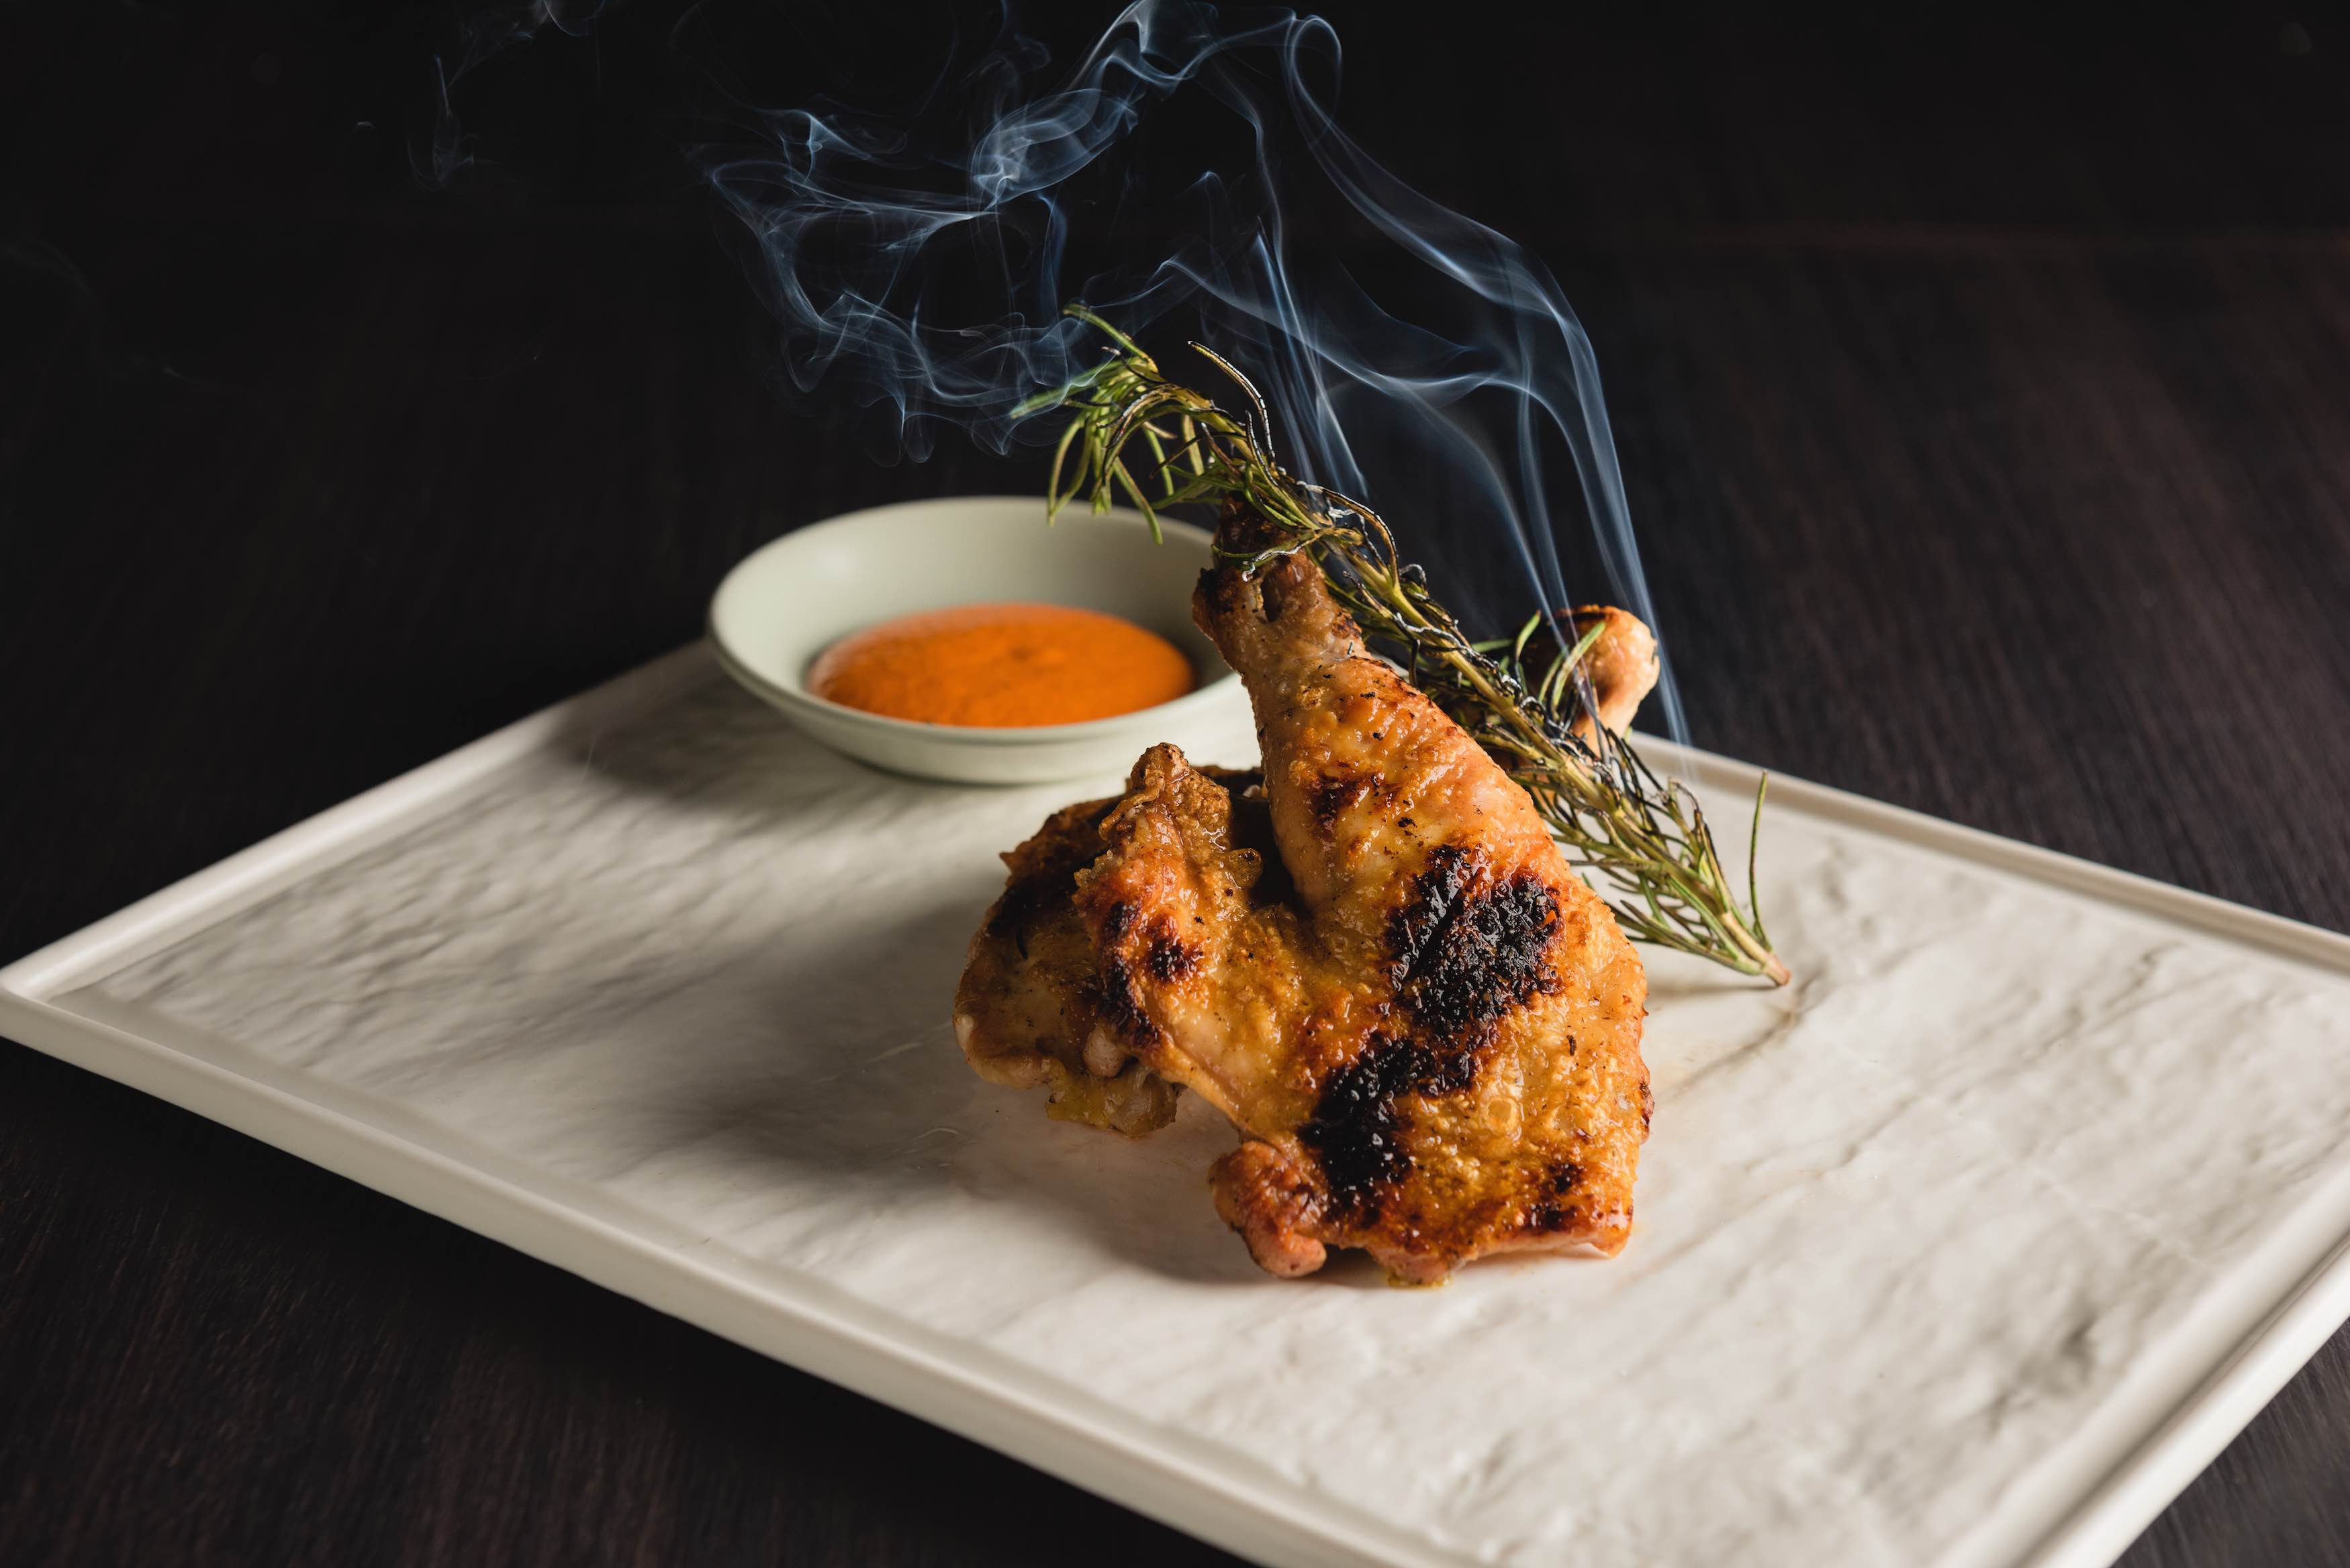 「本地玉米土雞」選用台南飼養玉米雞， 肉質細緻緊實、油脂適中，柴火燒烤後肉質甜美不乾澀，令人吮指回味。